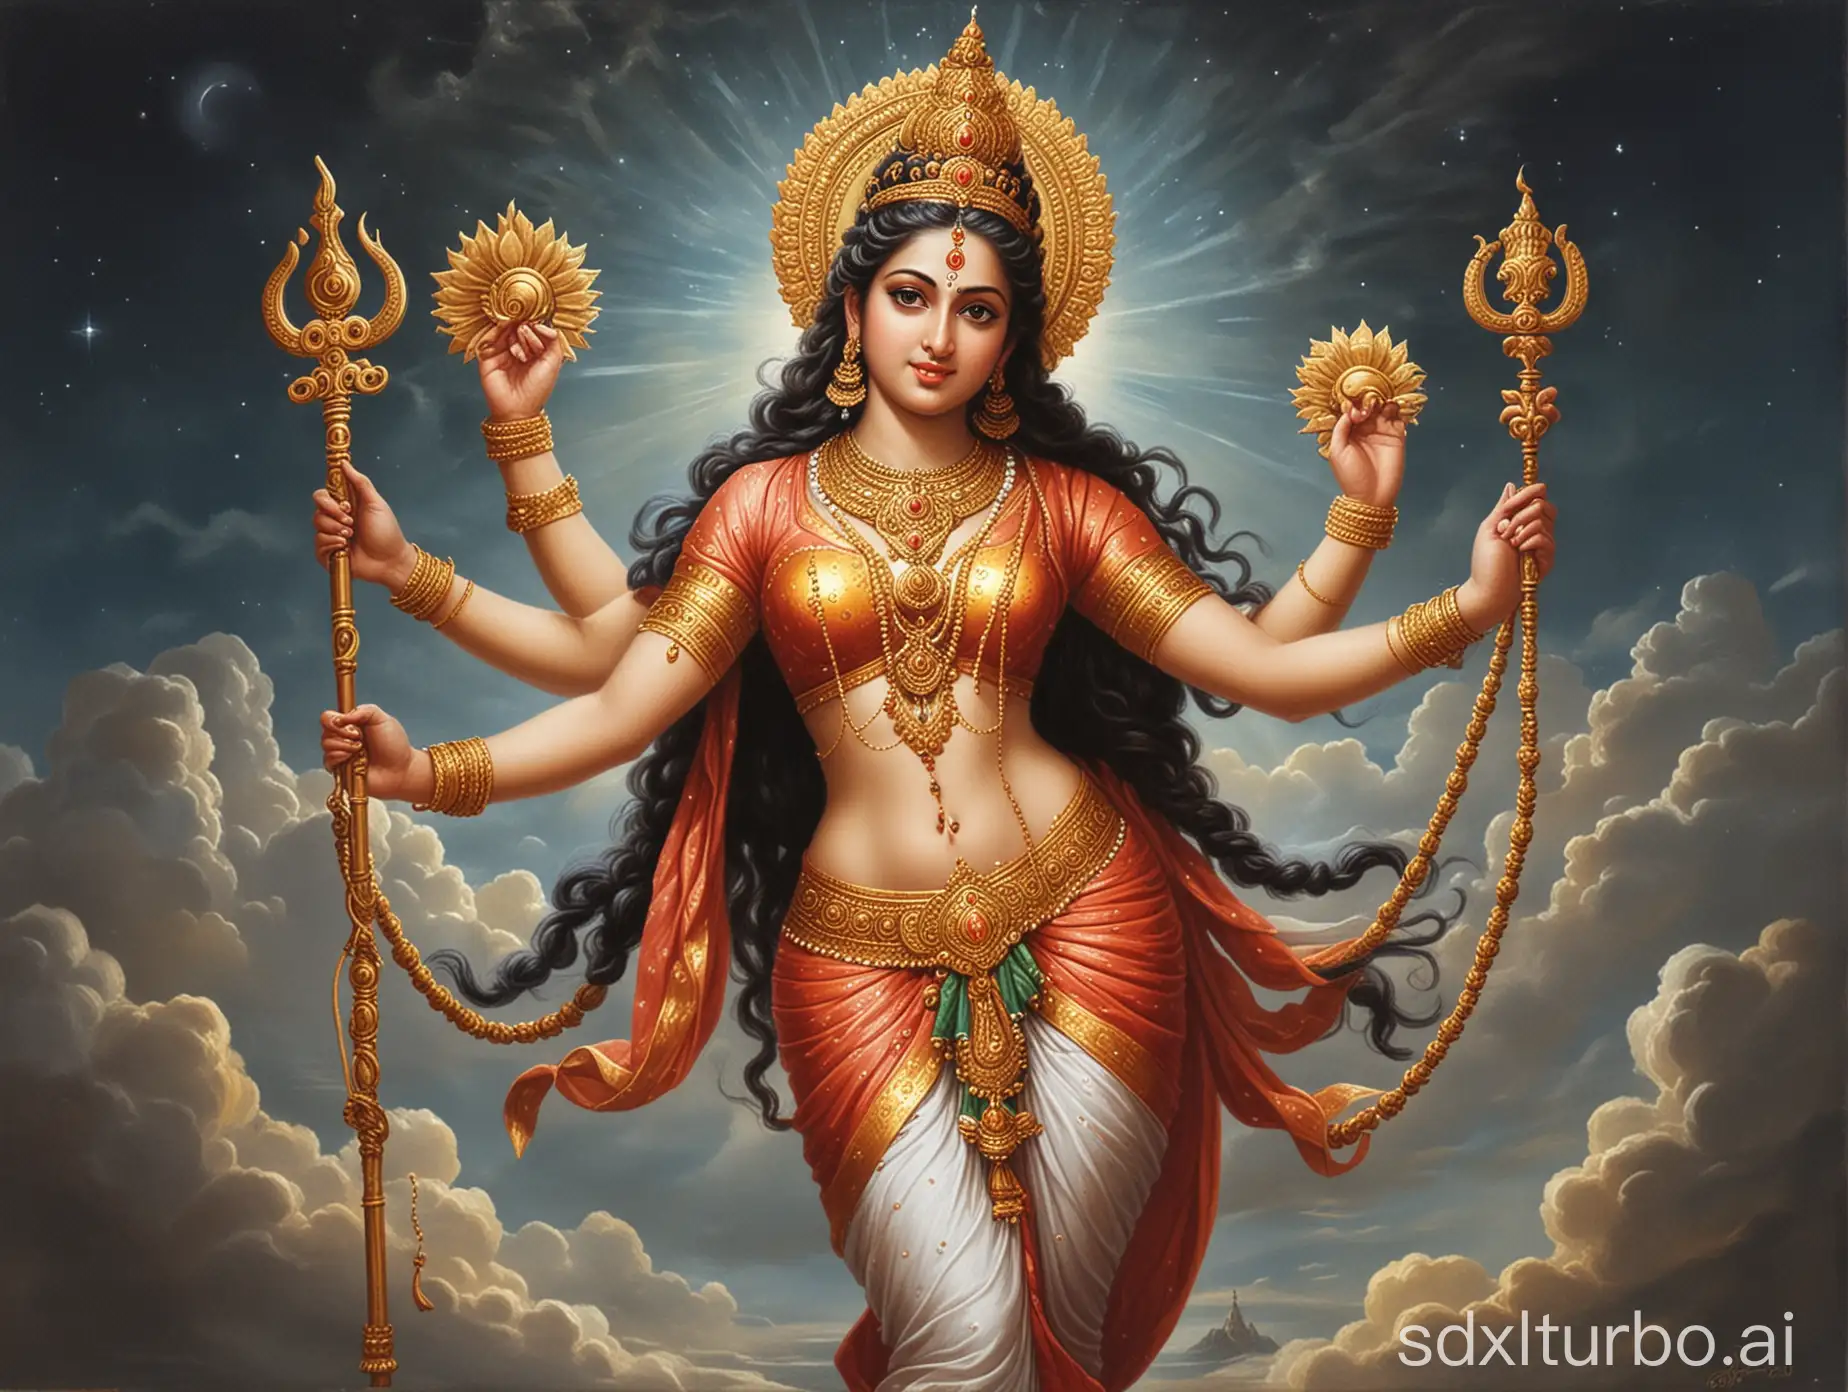 Ardhanarishvara-Deity-Divine-Fusion-of-Masculine-and-Feminine-Energies